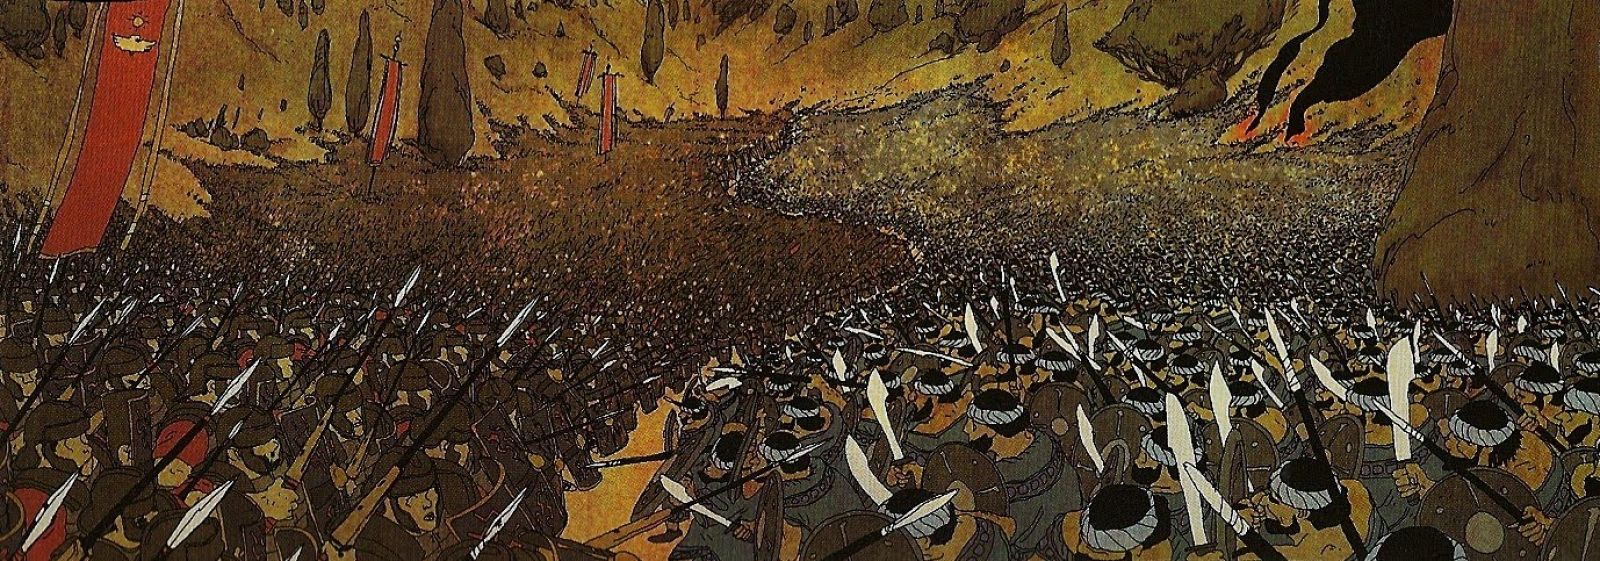 La espectacular batalla con la que comienza 'Por el Imperio' Guión y dibujos de Morwan y Vivès